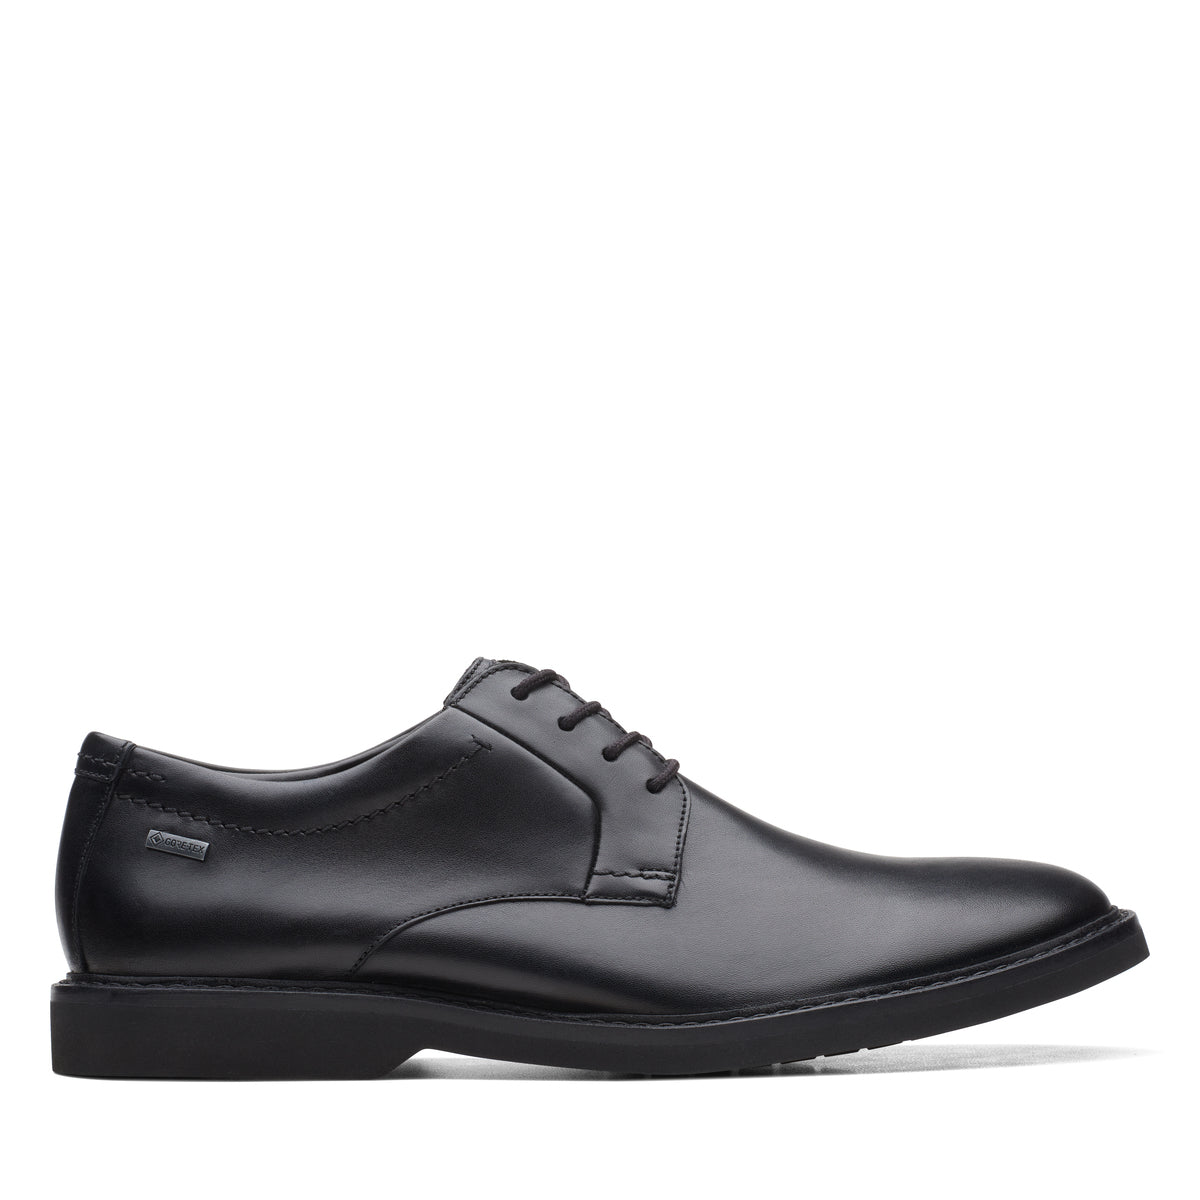 Zapatos Oxford De La Marca Clarks Para Hombre Modelo Atticus Lt Lo Gtx Black Leather En Color Negro